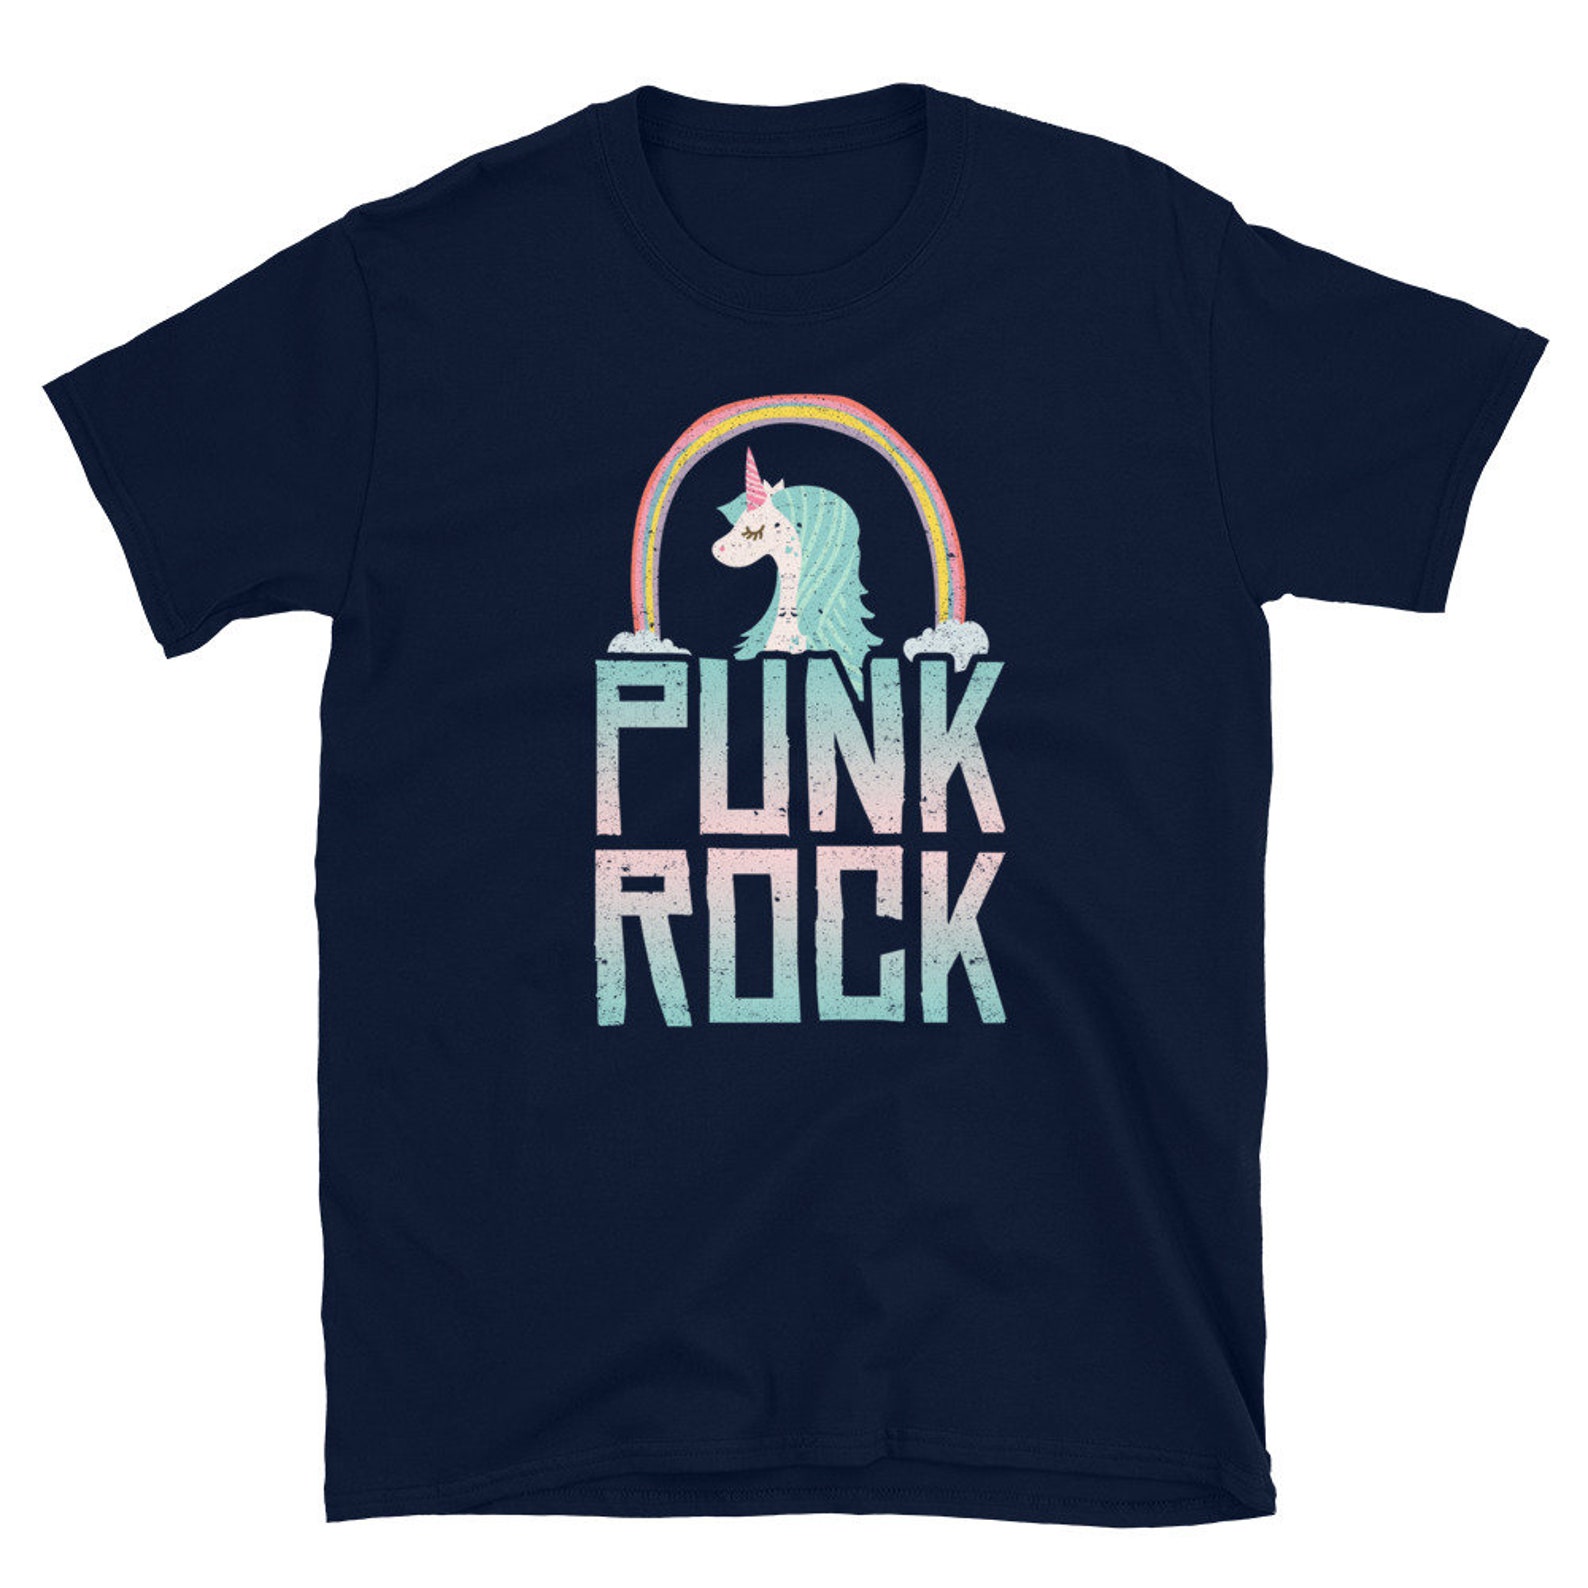 Punk Rock Shirt Punk Rock Gift Punk Shirt Unicorn Shirt - Etsy